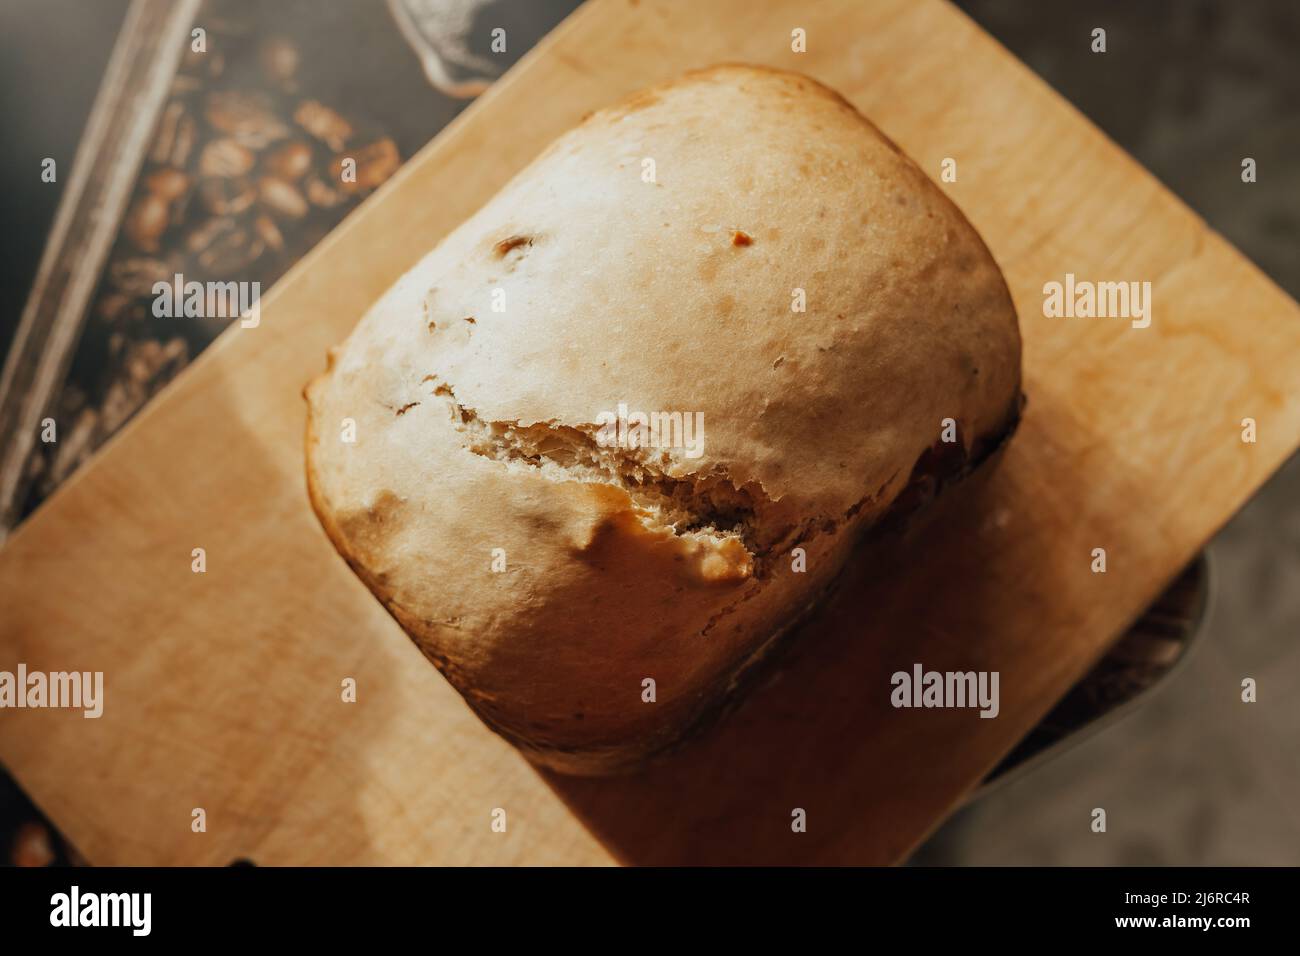 Ein Laib frisches, flauschiges hausgemachtes Brot, das in einer Brotmaschine auf einem Holzbrett gebacken wird. Stockfoto